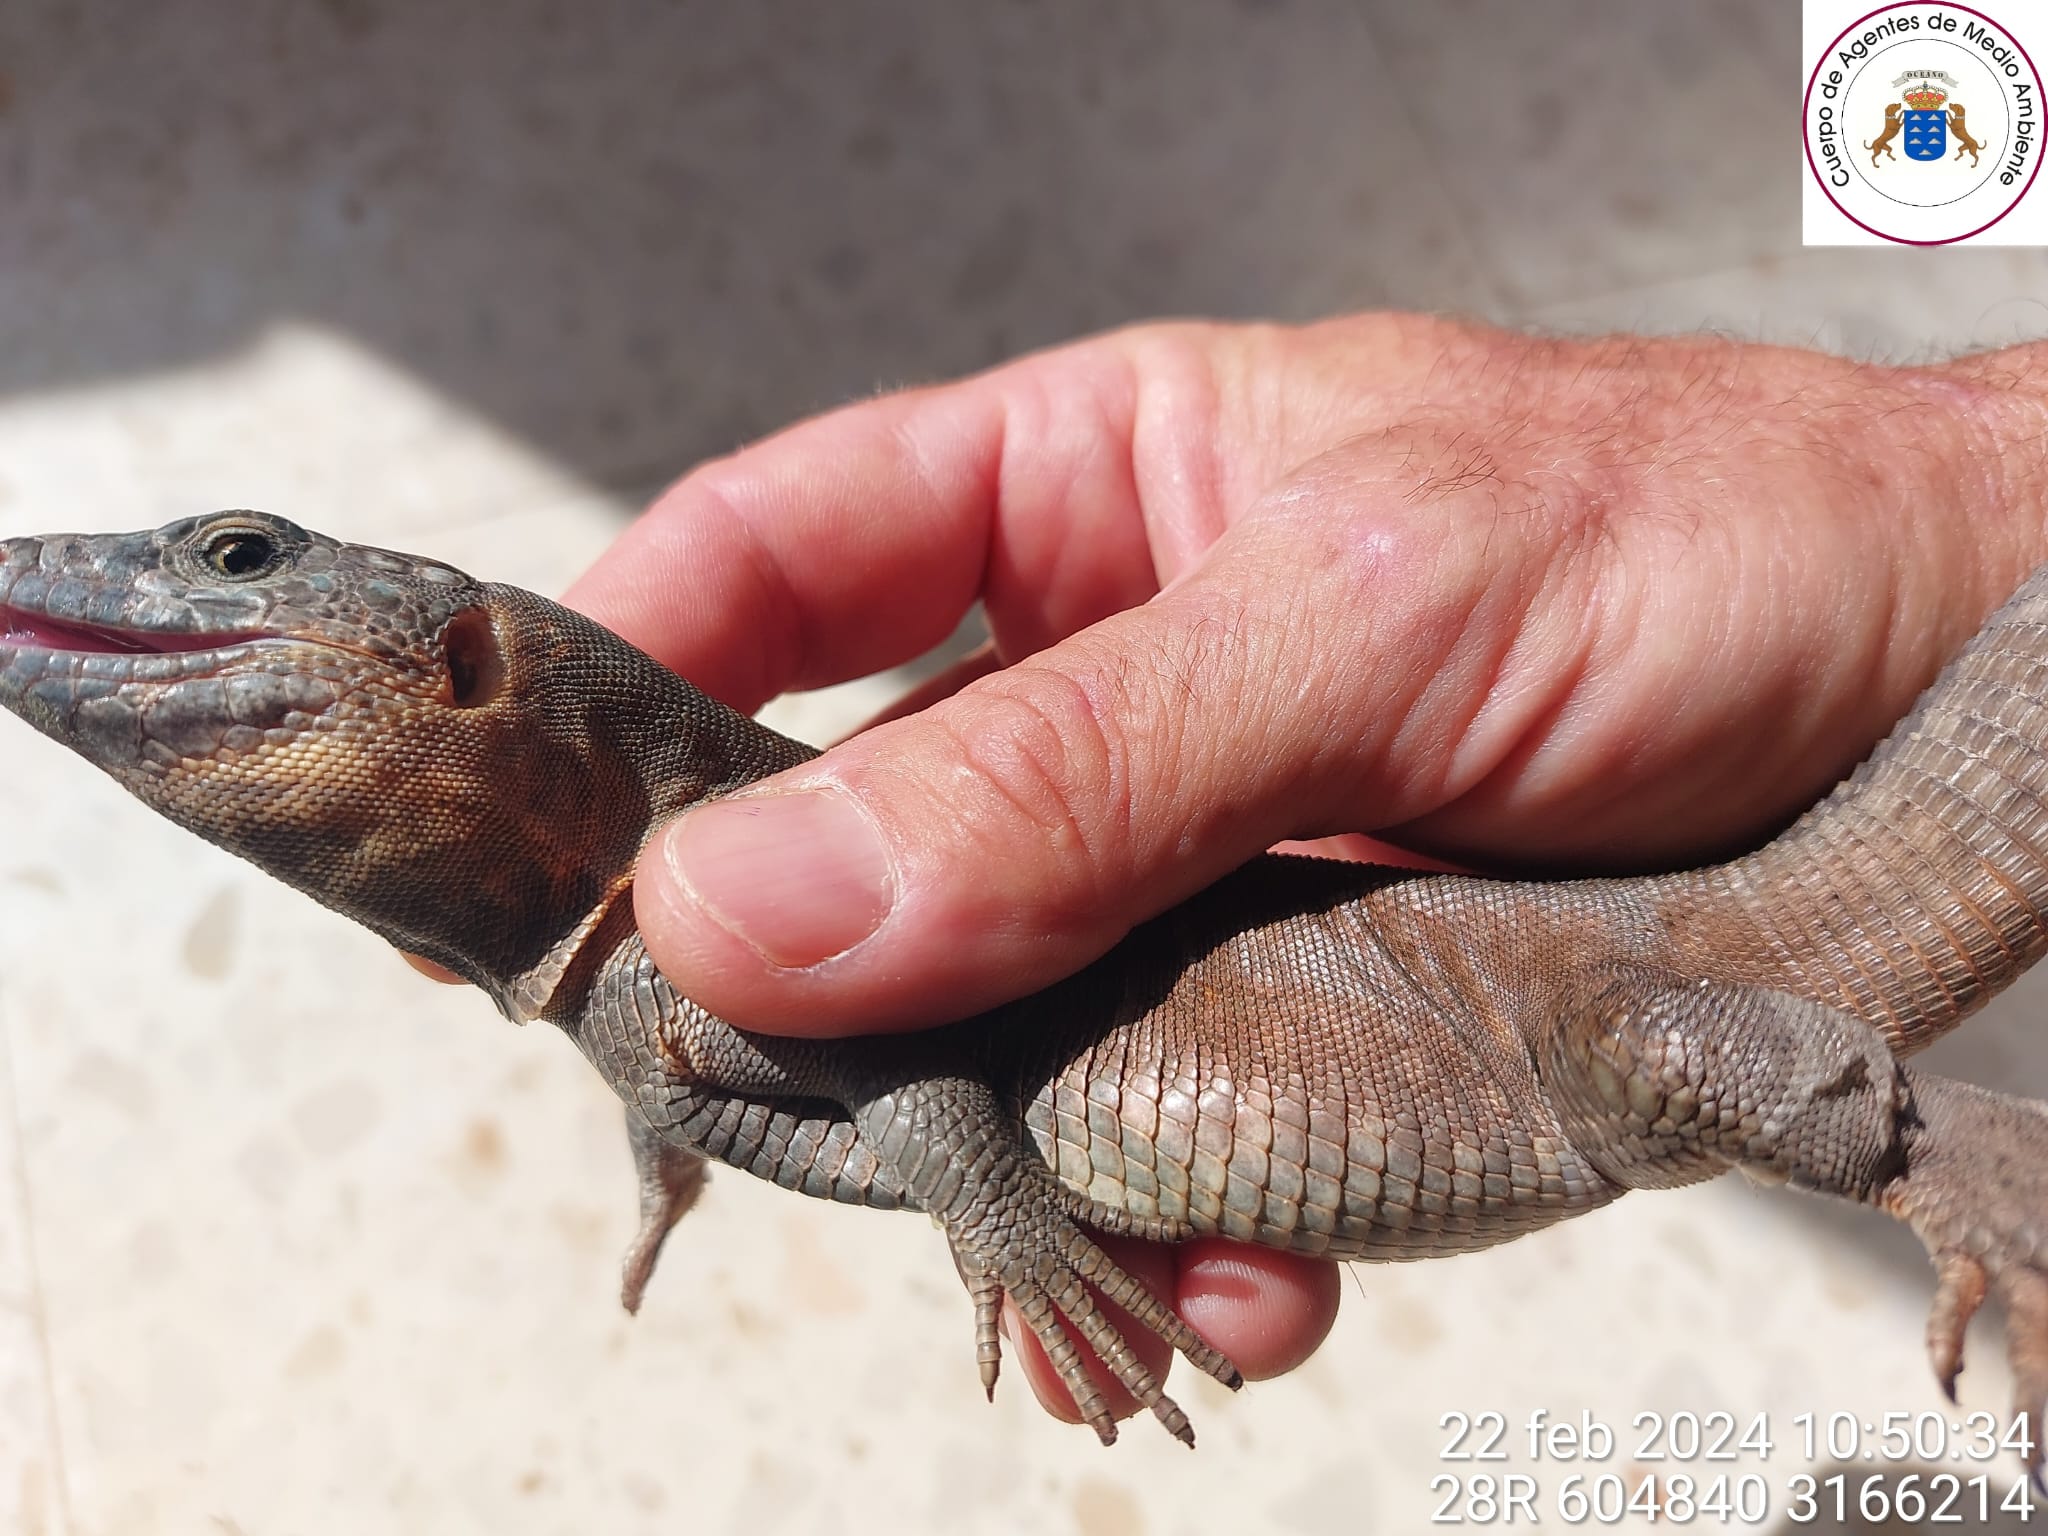 Descubren un lagarto gigante de Gran Canaria en una finca en Lajares